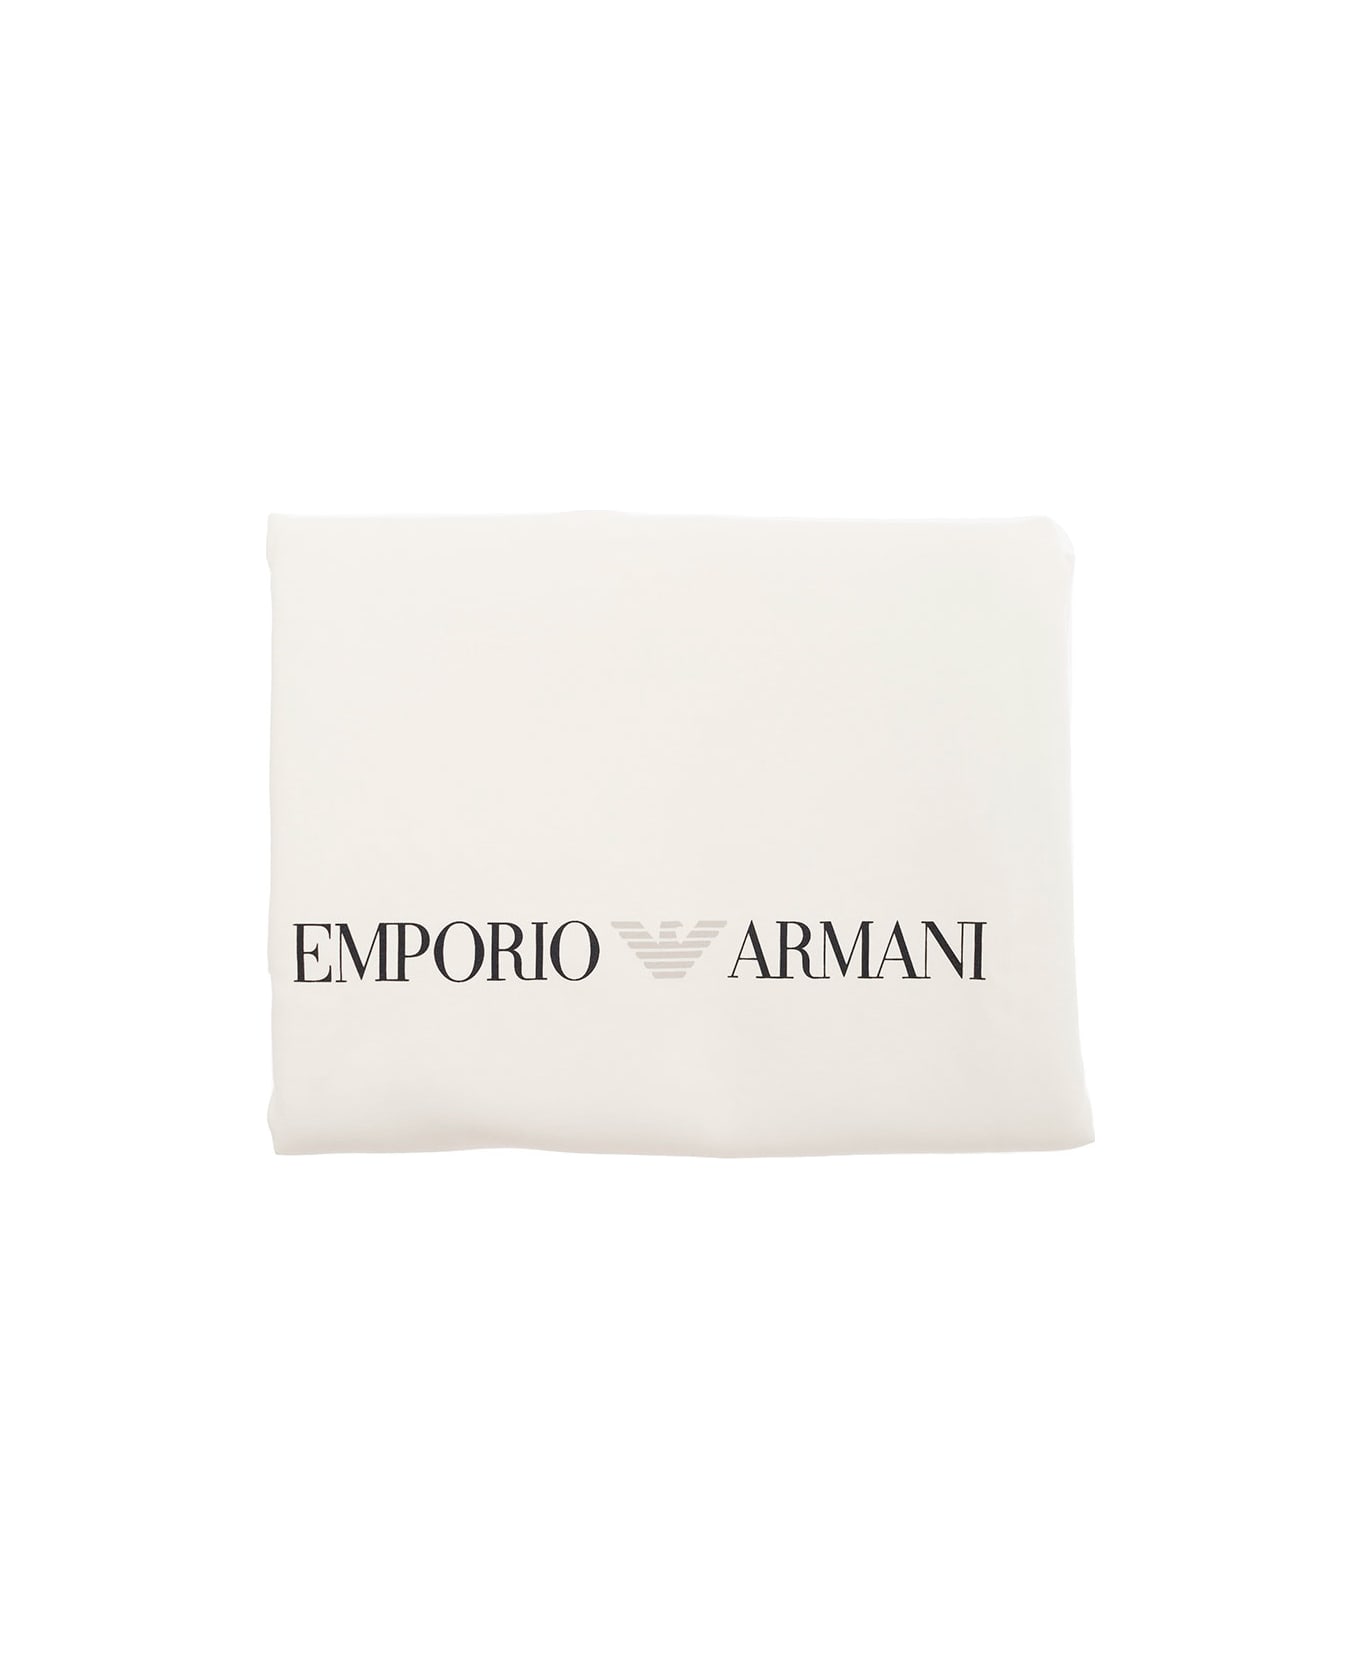 Emporio Armani White Blanket With Contrasting Logo Detail In Cotton - White